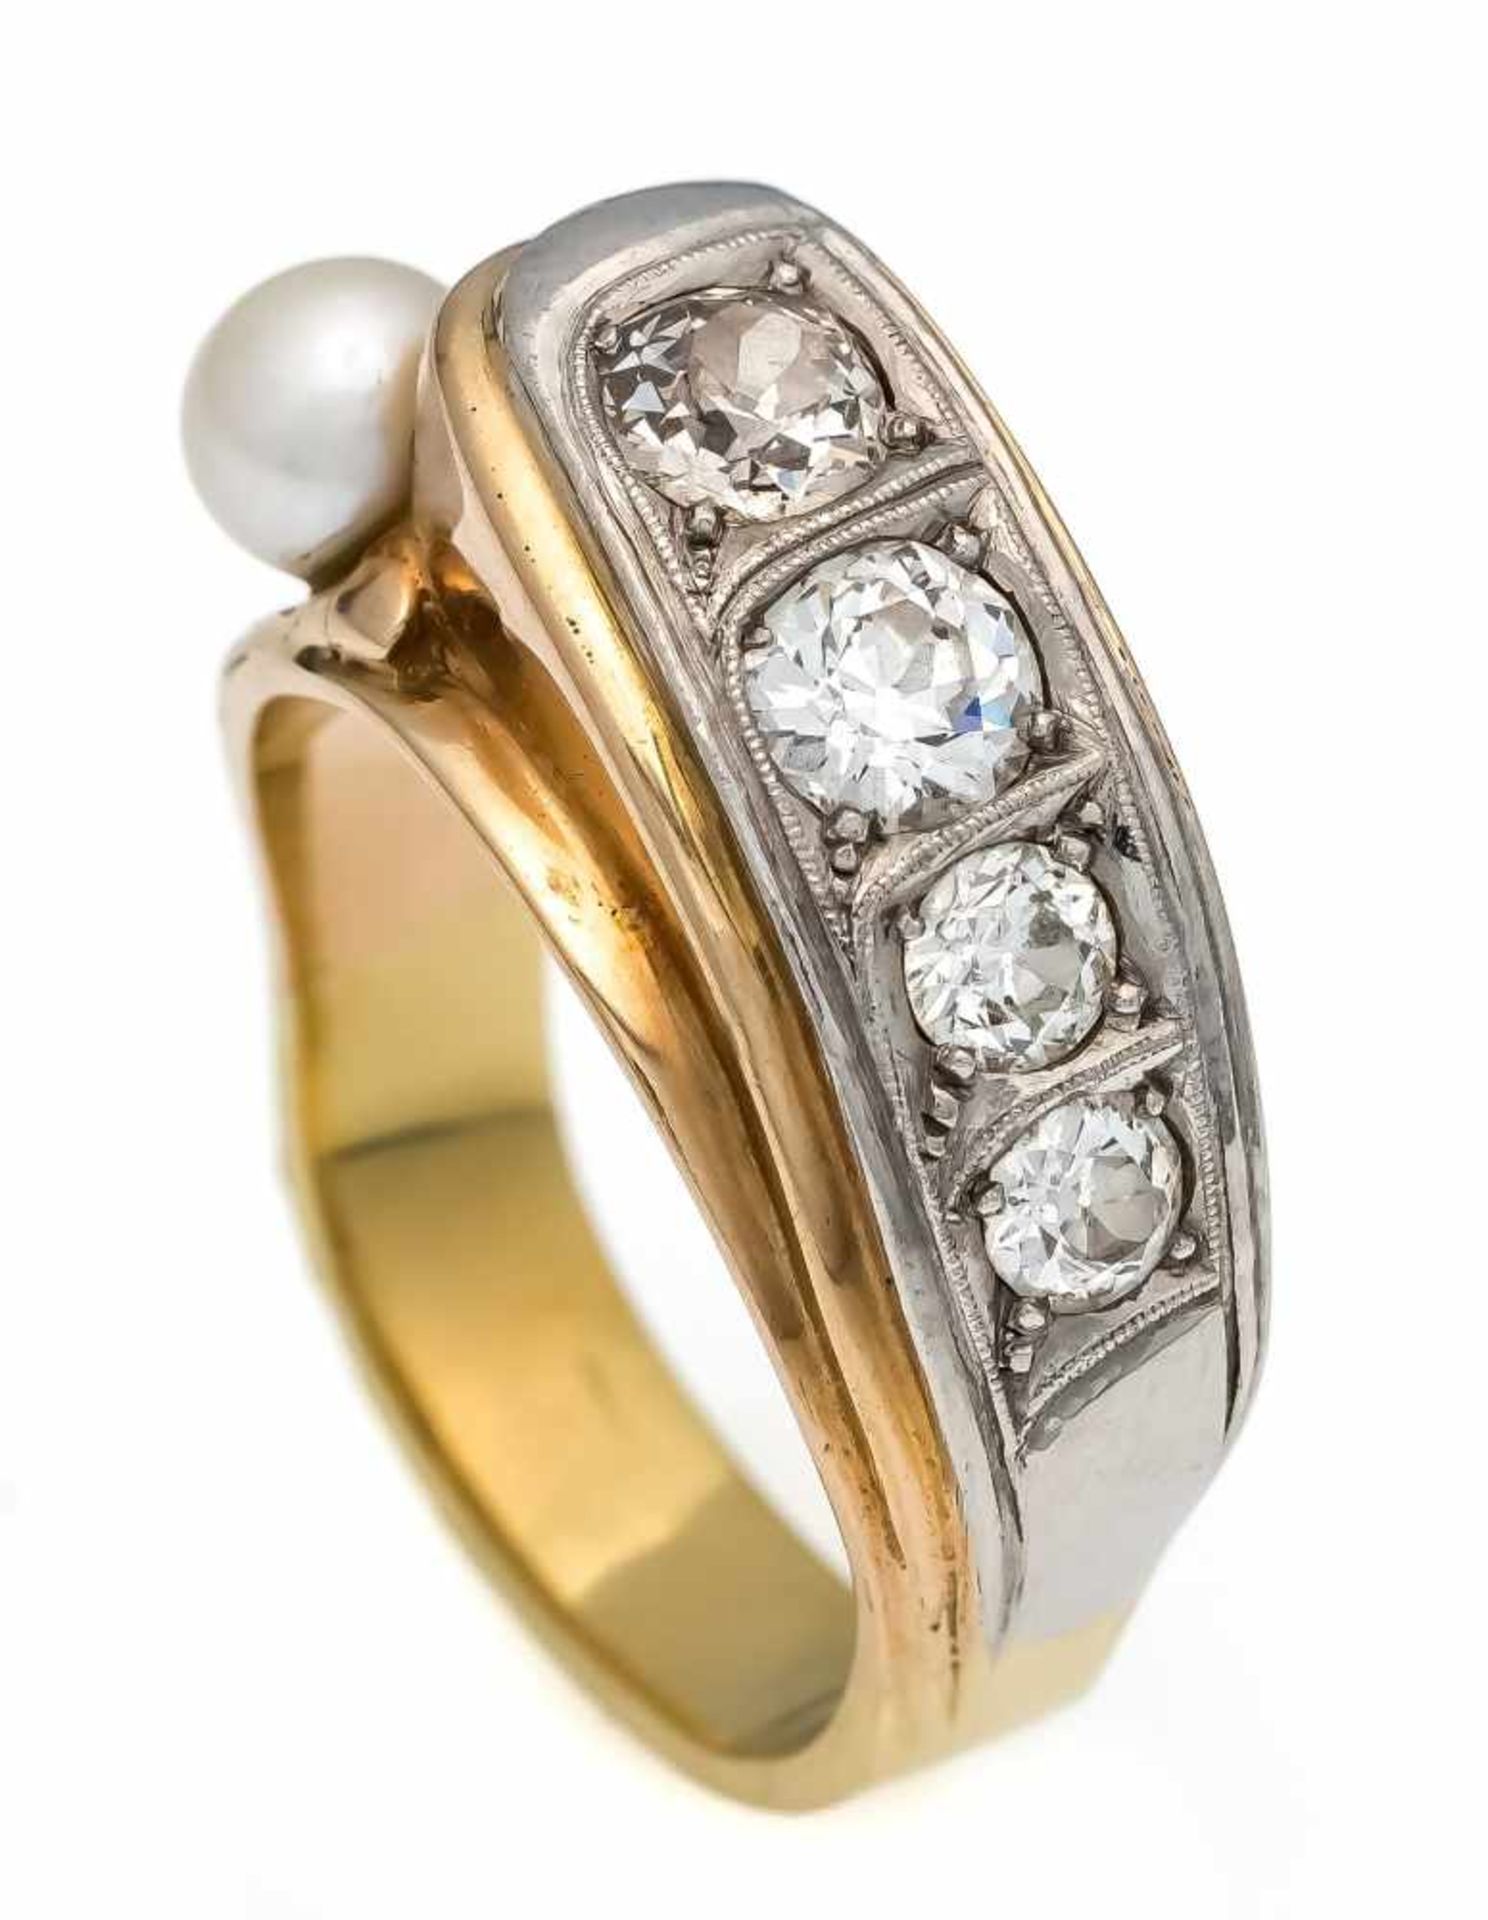 Akoya-Altschliff-Diamant-Ring GG/WG 585/000 mit einer Akoyaperle 6,0 mm und 4Altschliff-Diamanten,